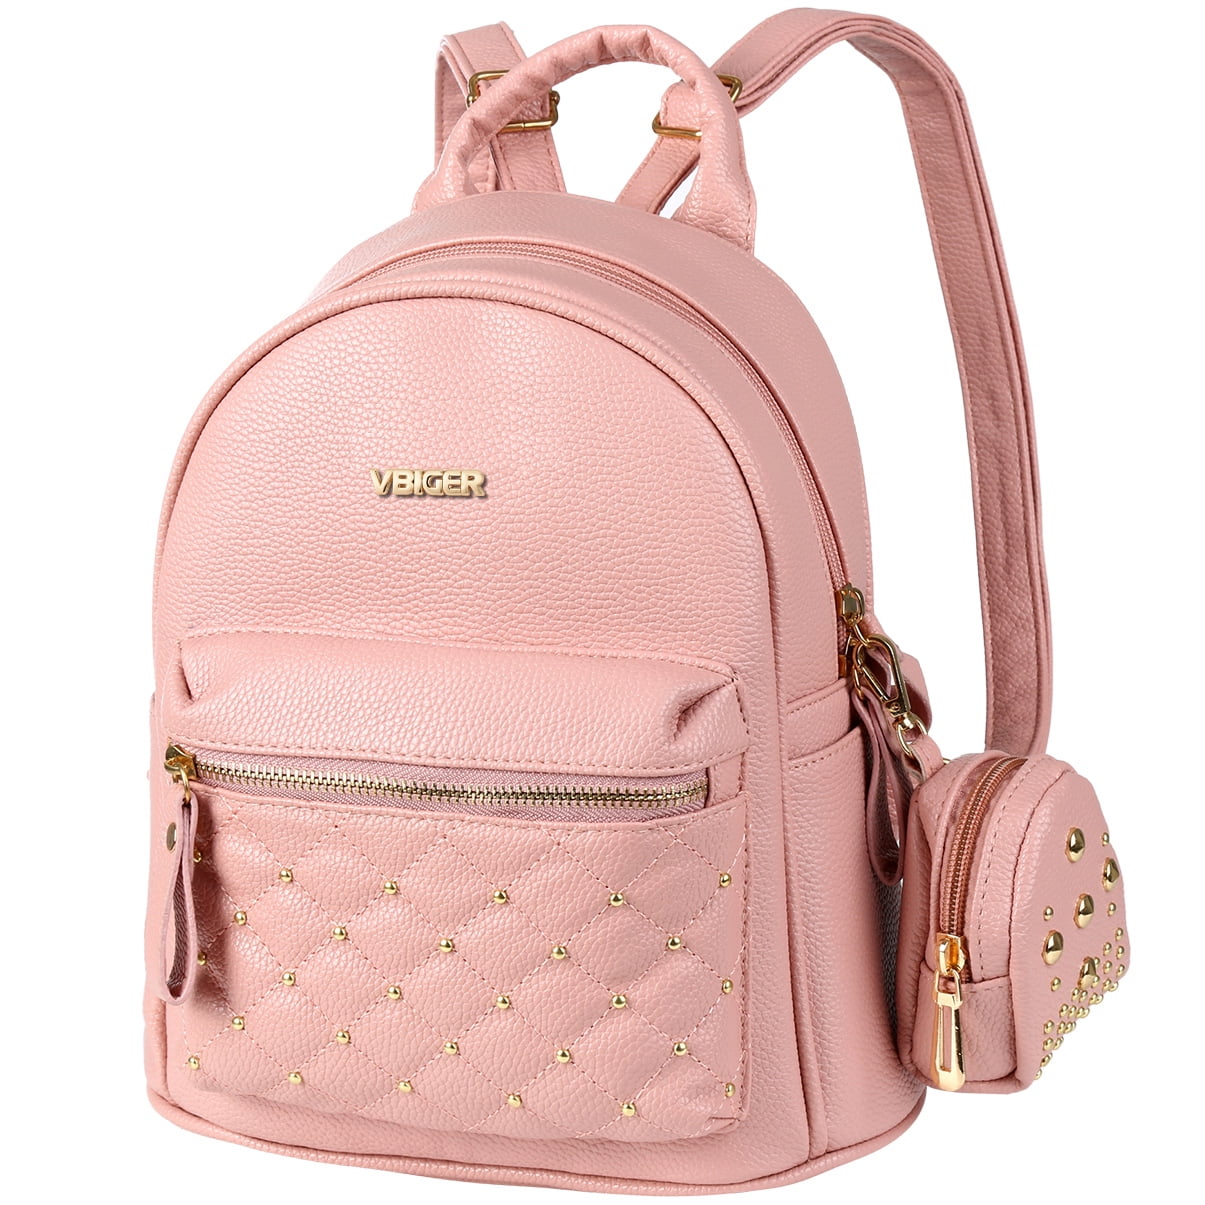 Fashion Women Leather Backpack Rucksack Travel School Bag Shoulder Bags Satchel 